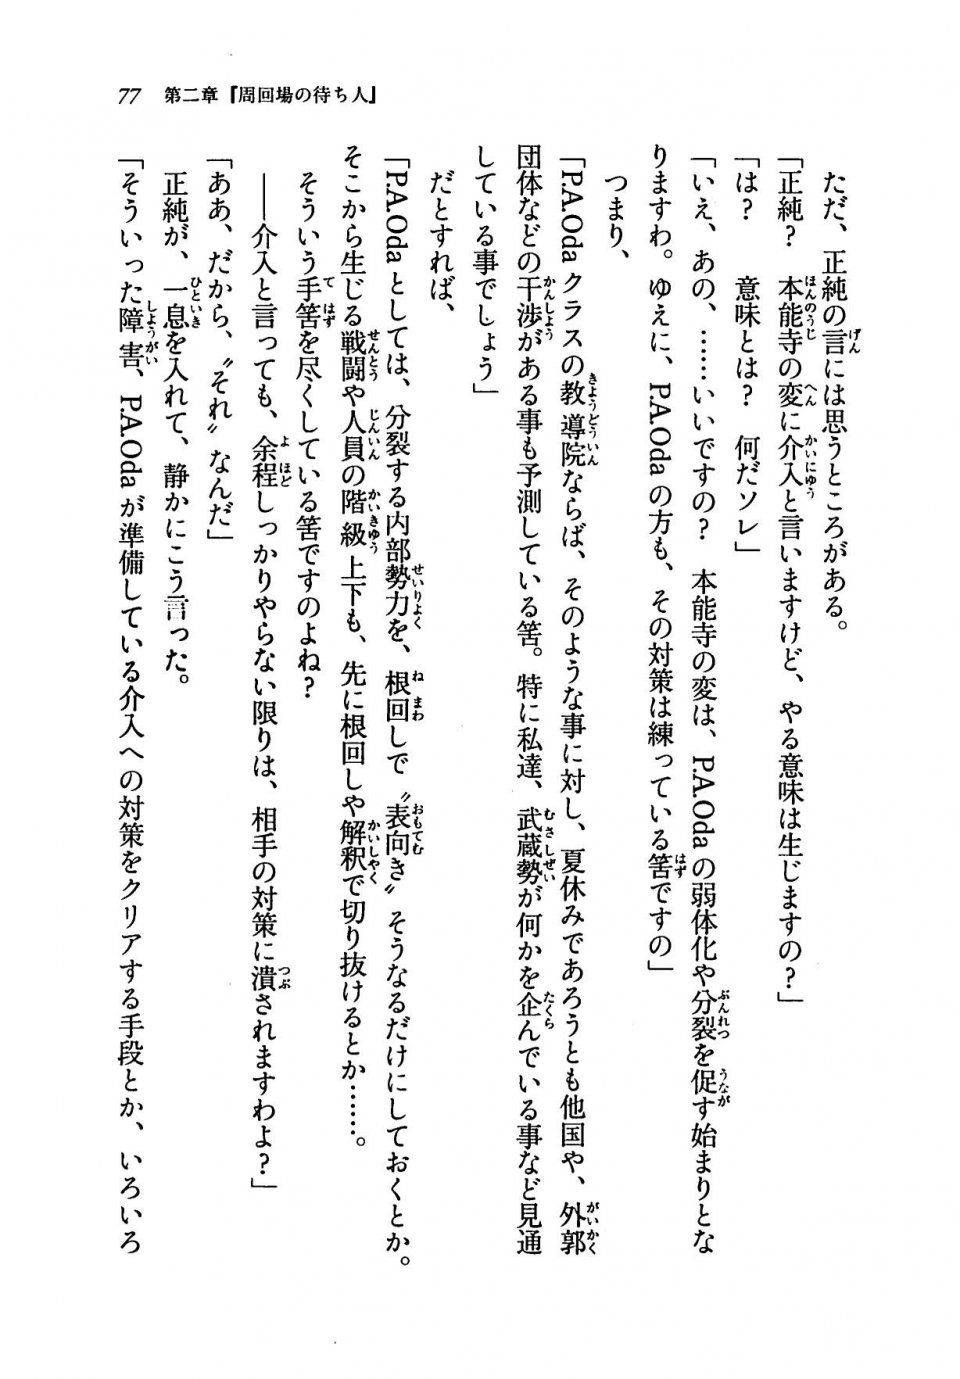 Kyoukai Senjou no Horizon LN Vol 19(8A) - Photo #77